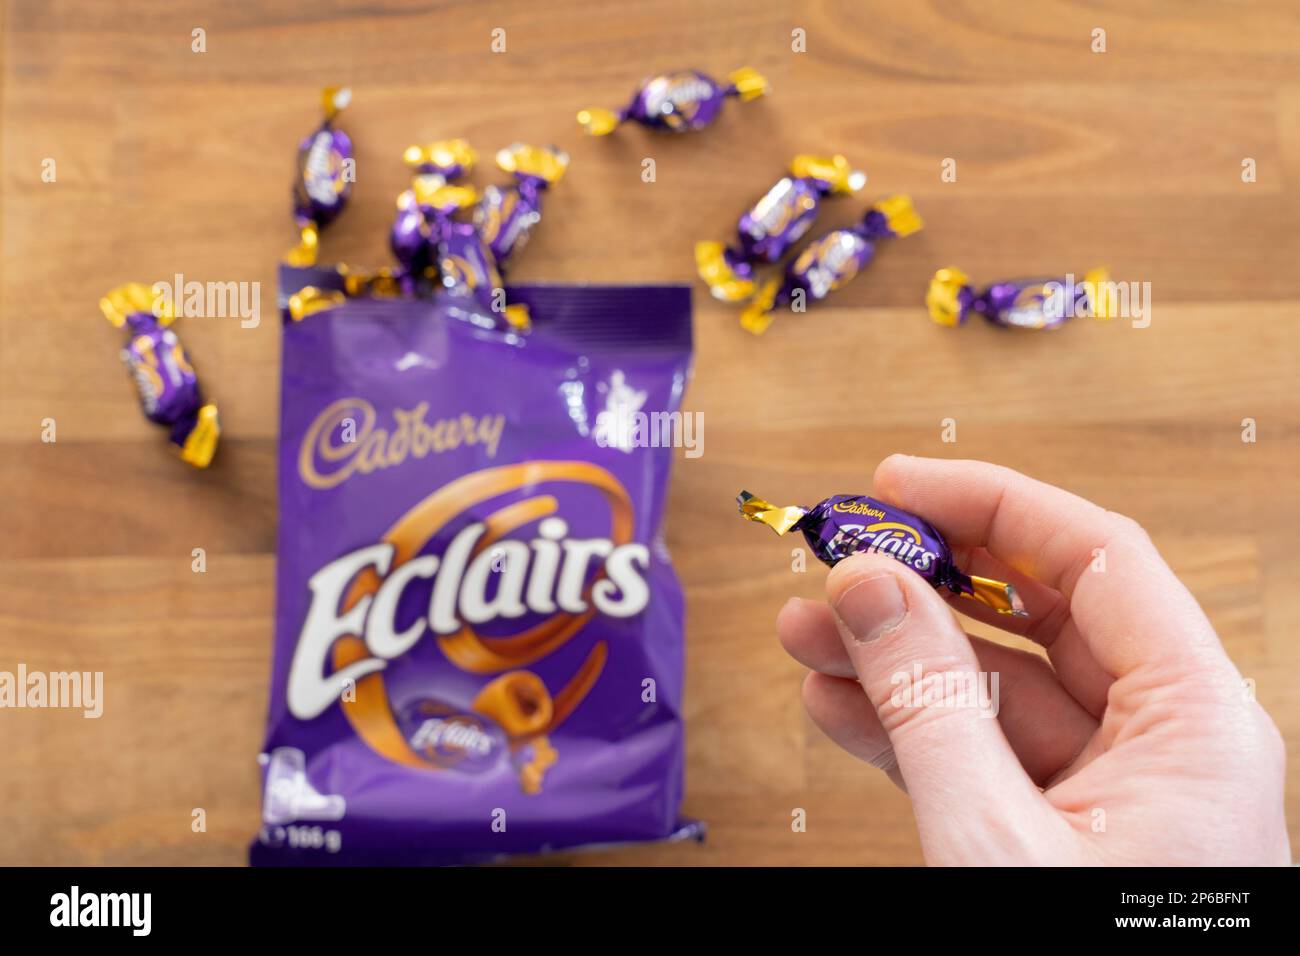 Die Hand eines Mannes, der einen Cadbury-Schokoladen-eclair-Süßstoff hält. UK. Konzept: Cadbury-Marke, ungesunde Ernährung, Snack, Lebensmittelsucht Stockfoto